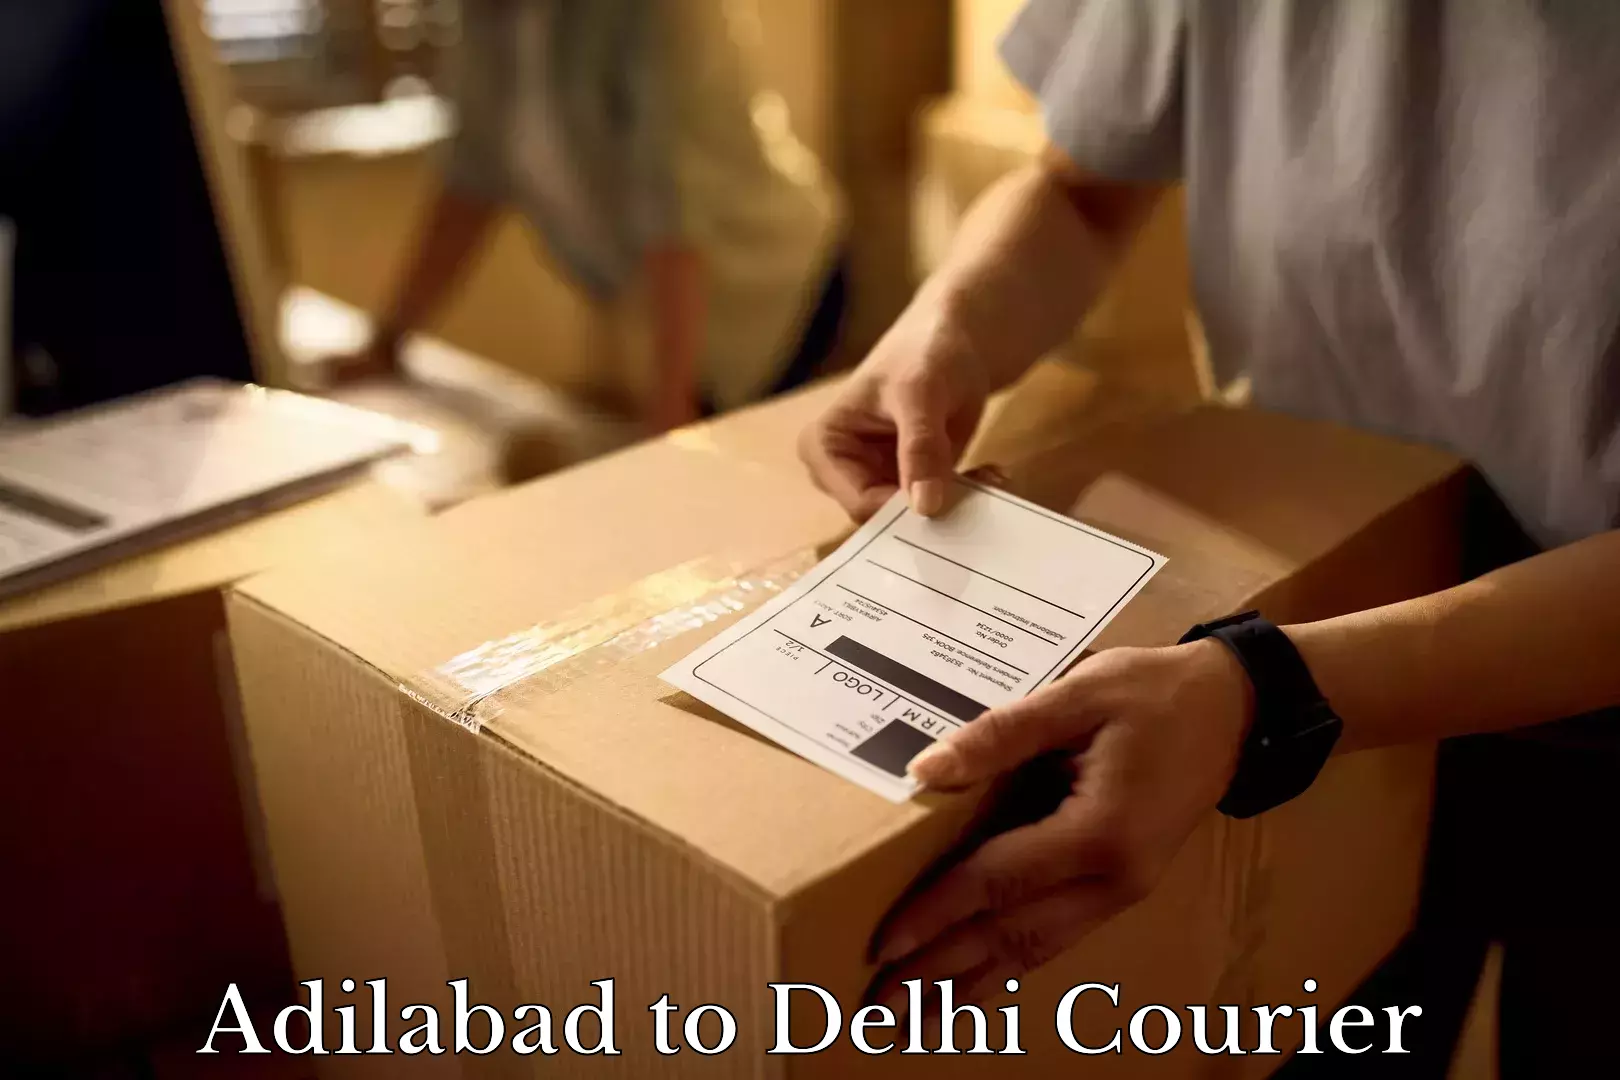 Full-service movers Adilabad to Delhi